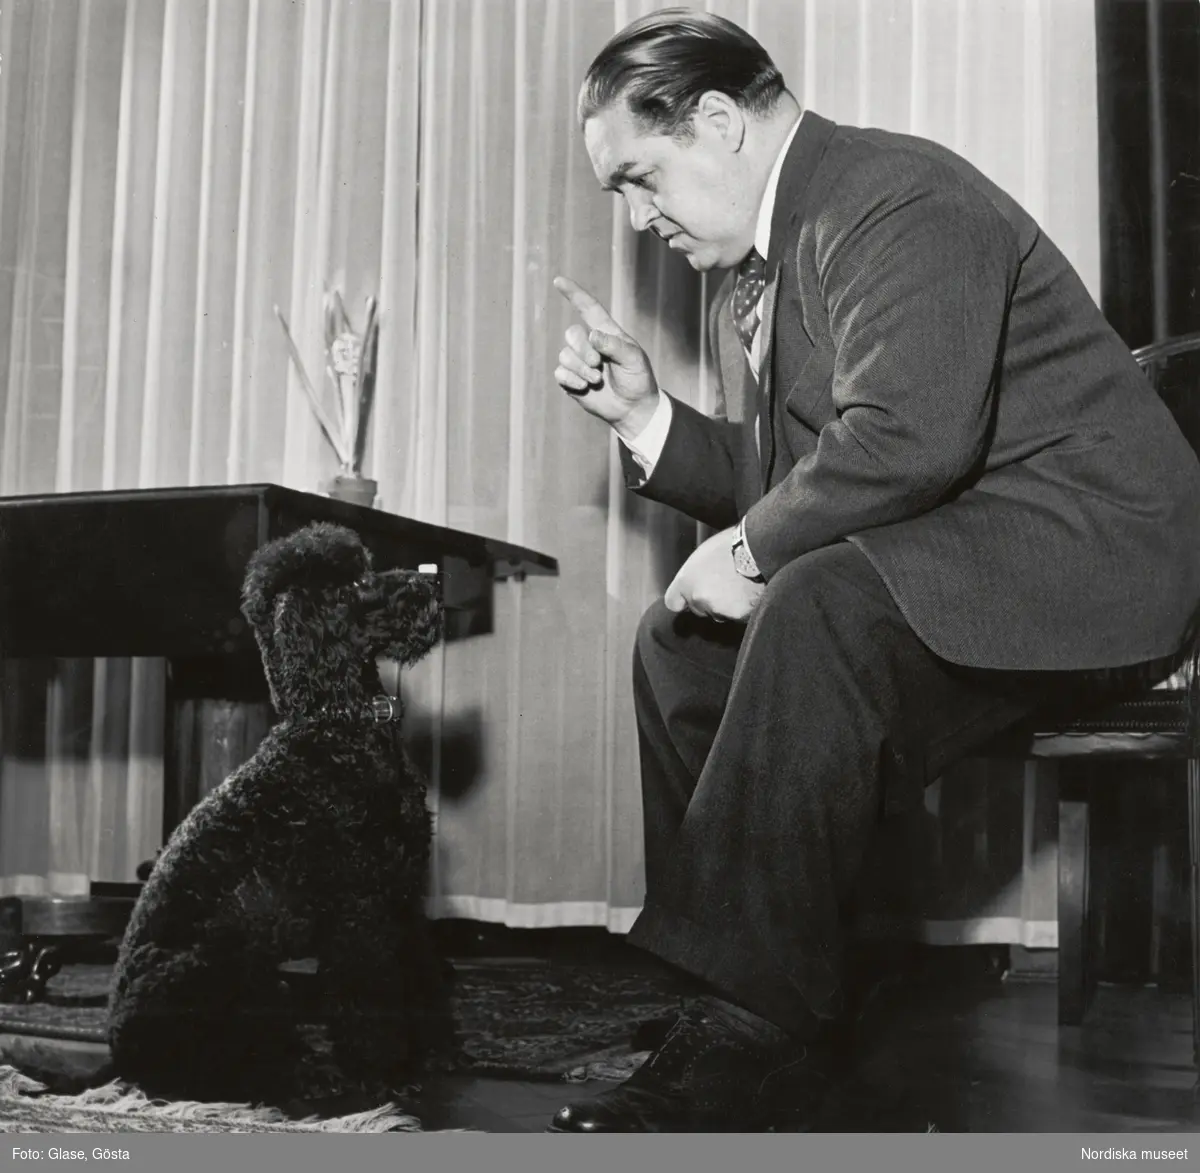 Den svenske operasångaren, tenoren Jussi Björling (1911-1960) avporträtterad tillsammans med en hund. Jussi Björling är klädd i fiskbensmönstrad tweedkavaj, slipover, skjorta och prickig slips. Han sitter i en rumsinteriör och höjer fingret åt en pudel som sitter på golvet framför honom. I bakgrunden ett draperi och ett bord med en hyacint i kruka.